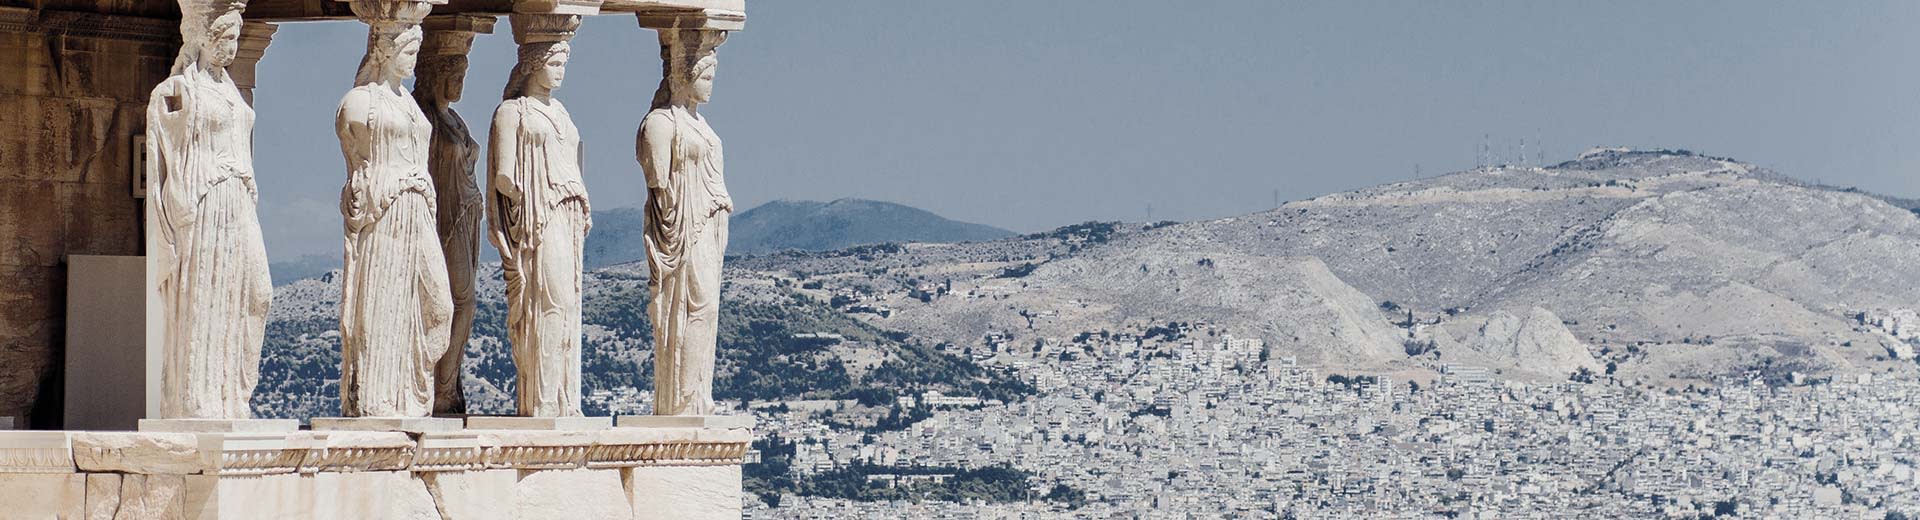 Caryatids des Erechtheion in Athen mit Bergen im Hintergrund.